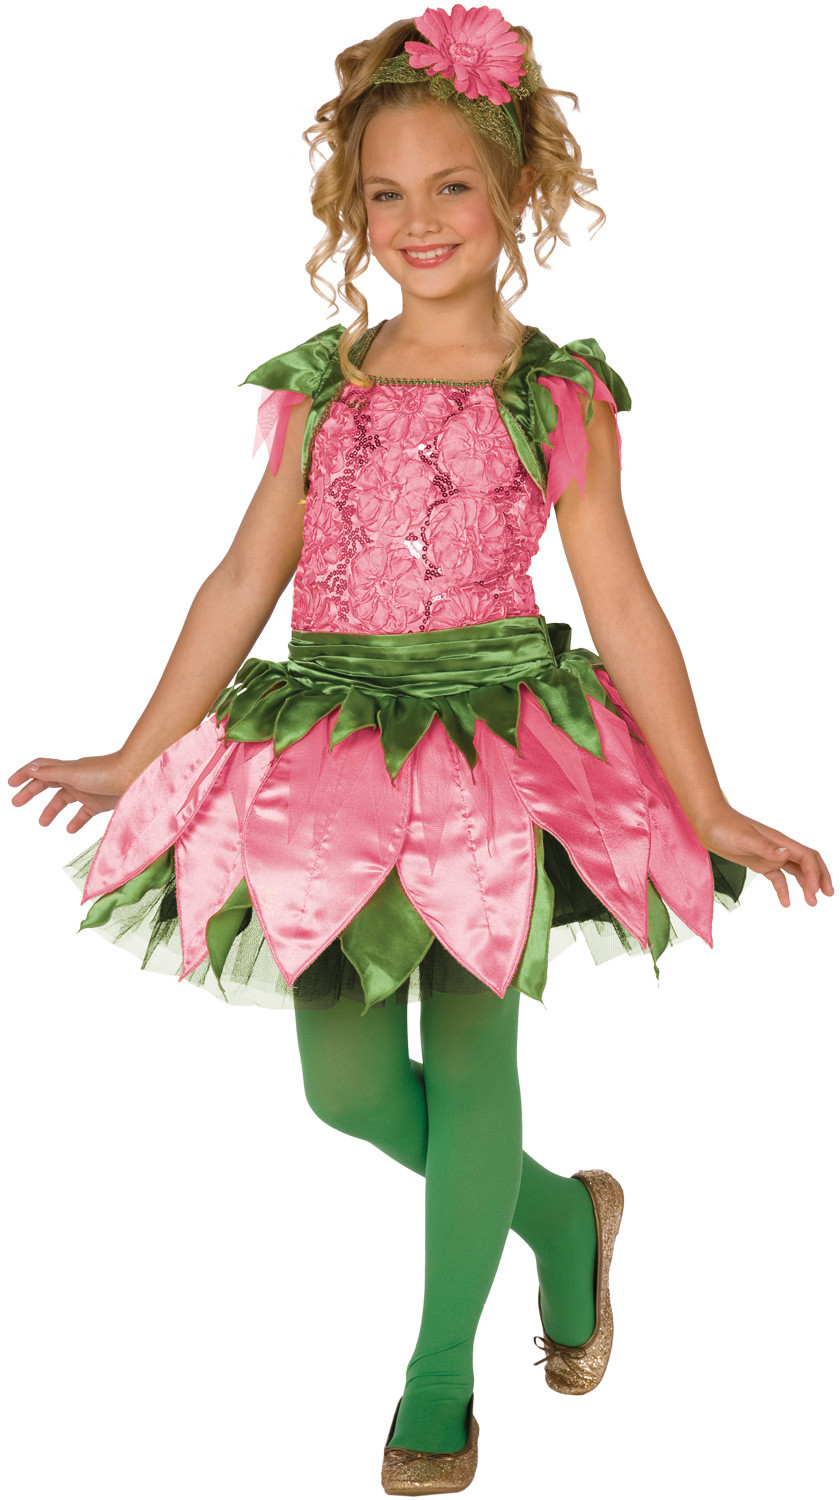 Flower Child Halloween Costume
 Flower Costumes for Men Women Kids